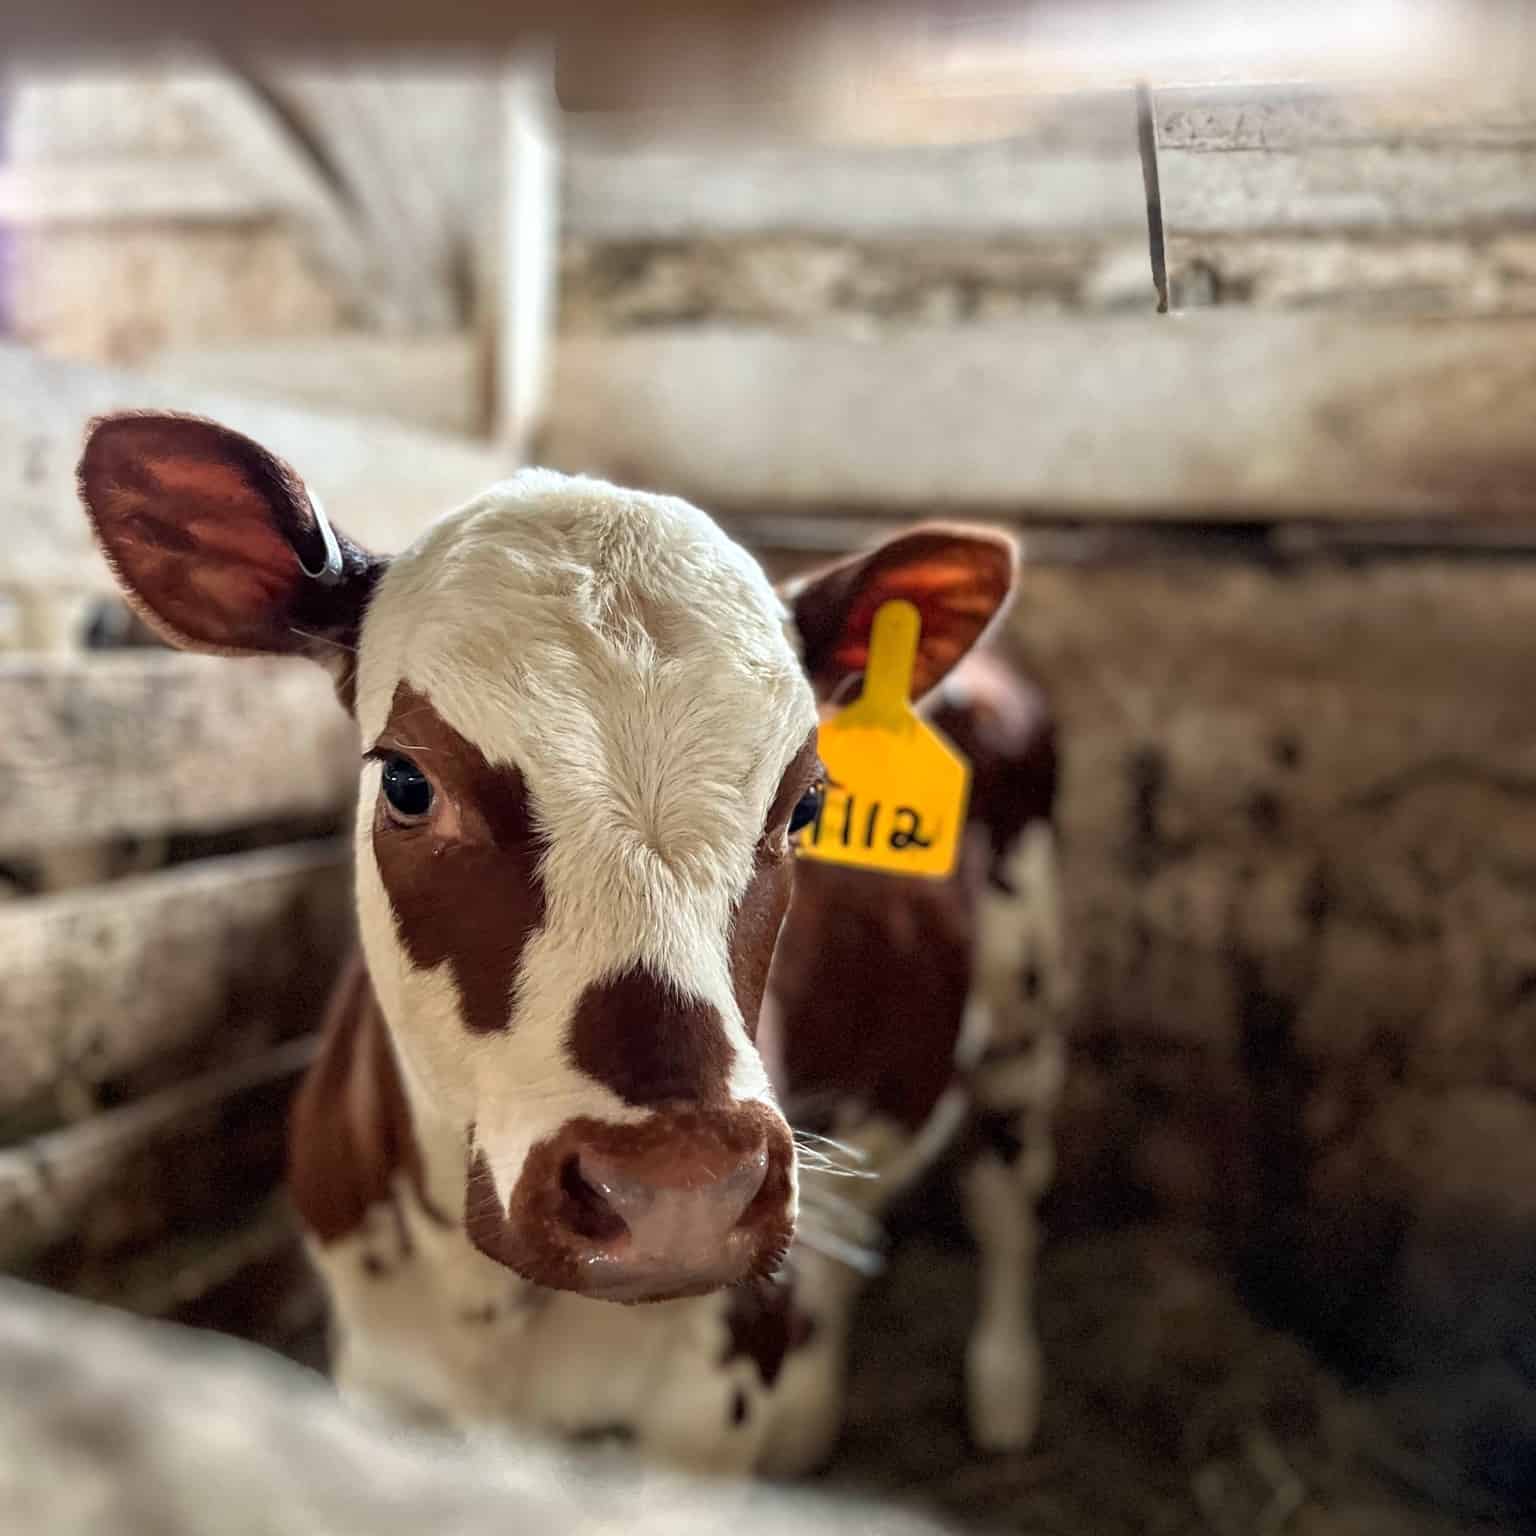 von Trapp Farmstead Cheese Cow